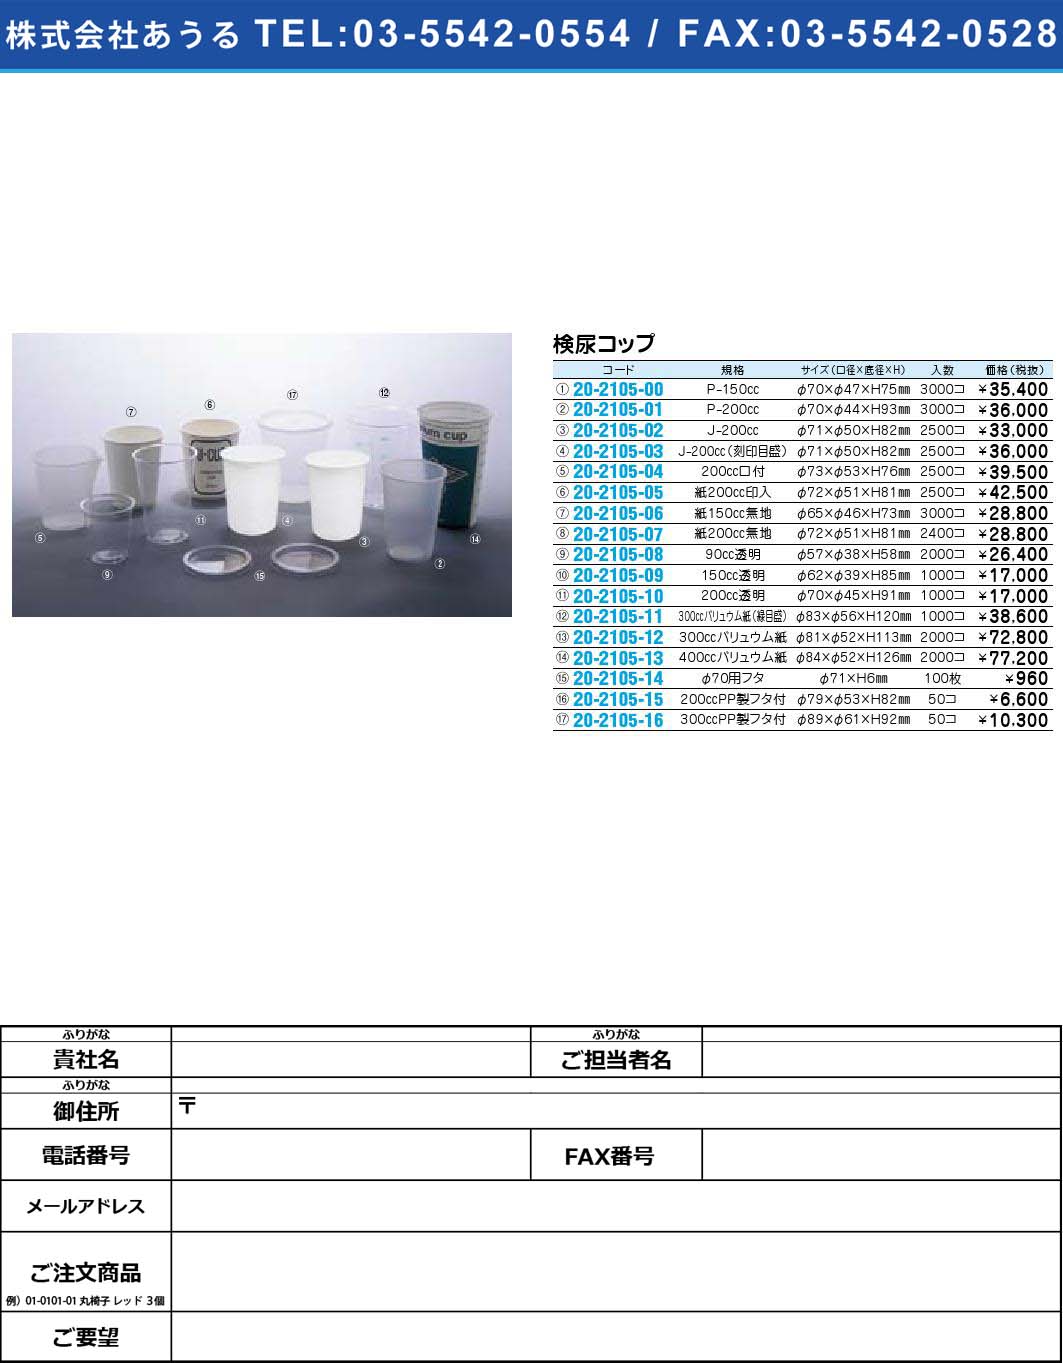 検尿コップ 【1単位】(20-2105-15)